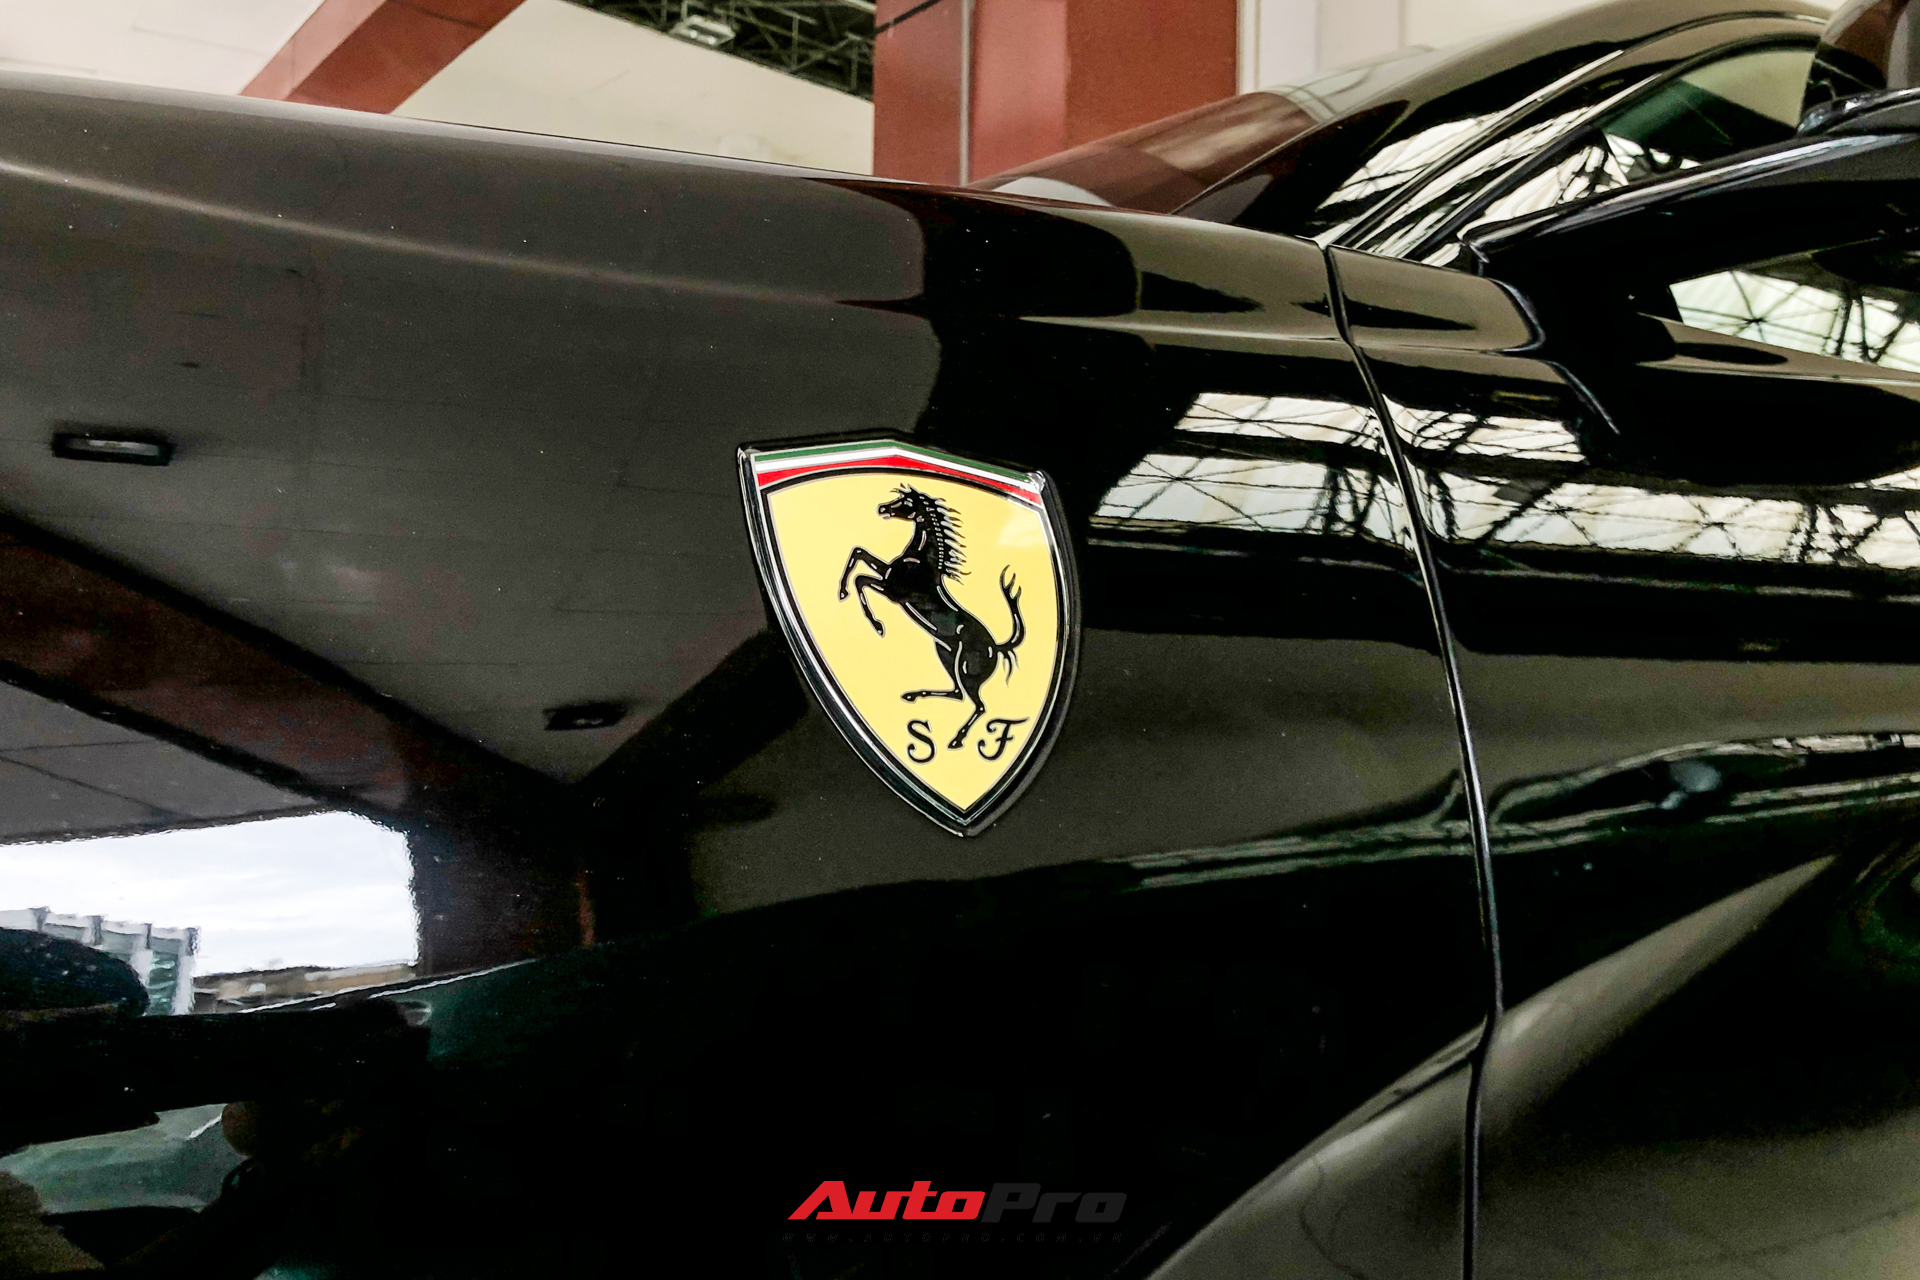 Cận cảnh Ferrari 812 Superfast từng của doanh nhân Hải Phòng tại showroom siêu xe số 1 Sài thành - Ảnh 6.